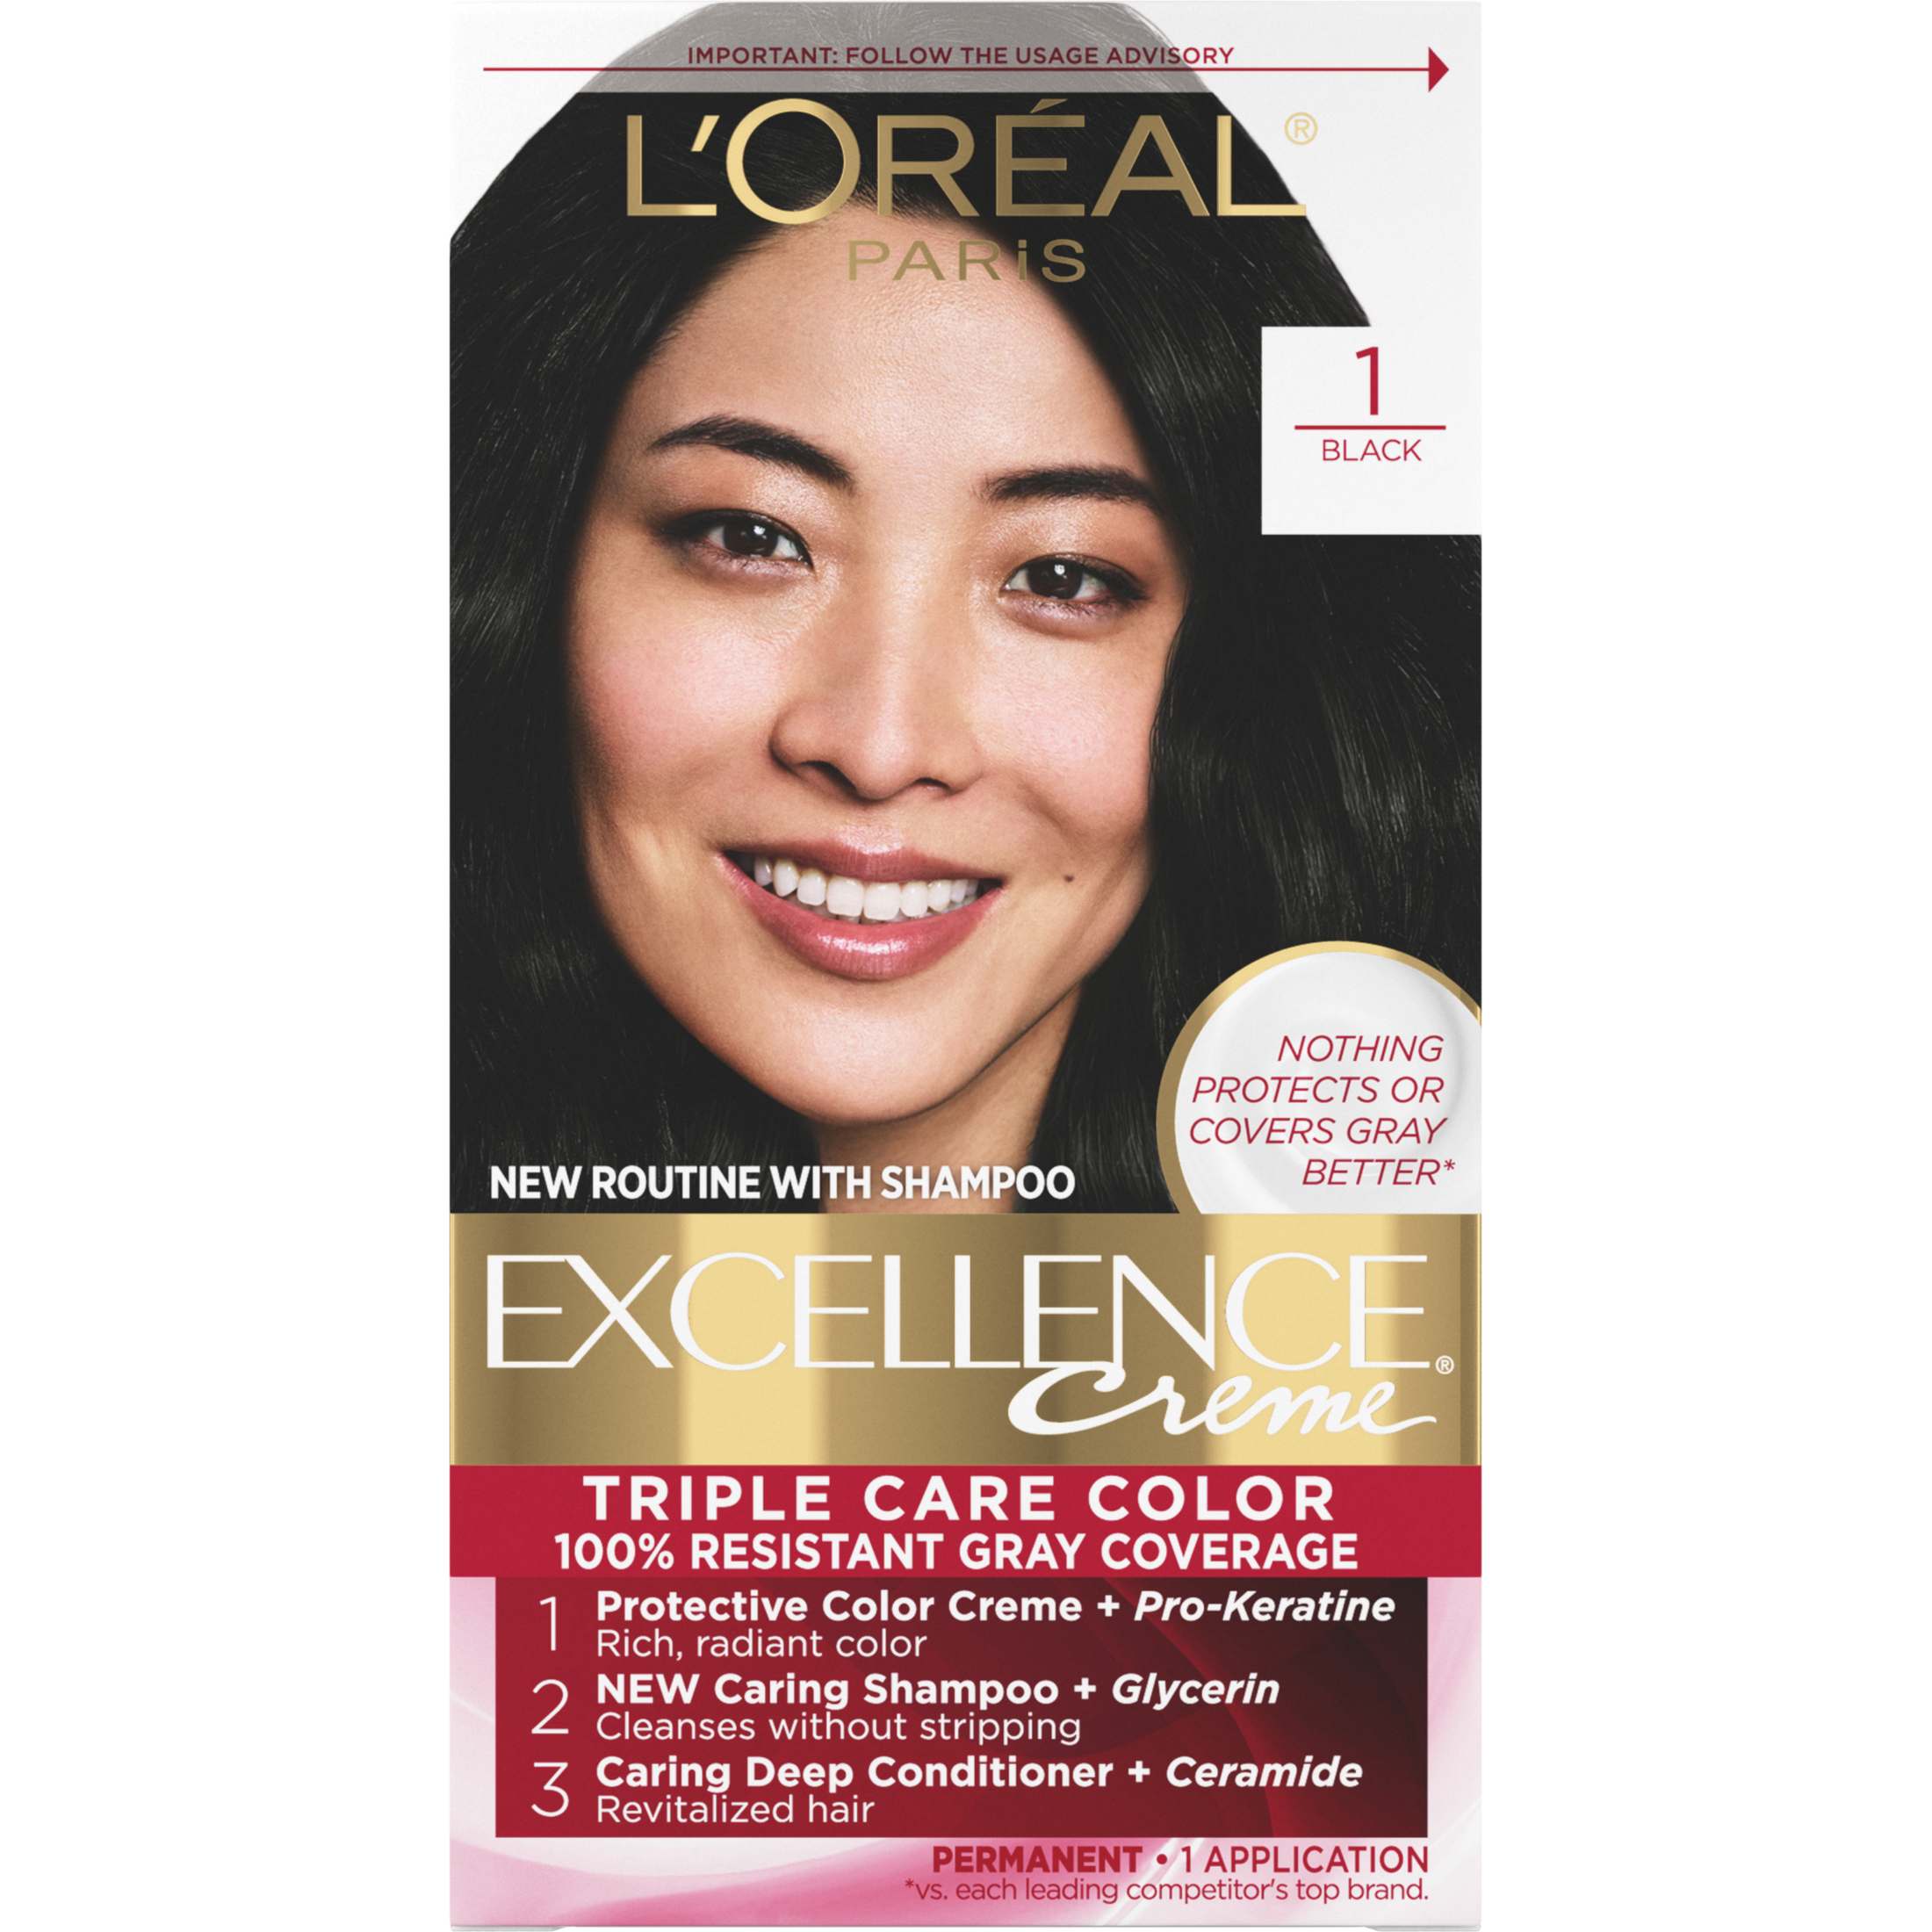 L'Oreal Paris Excellence Creme Permanent Hair Color, 1 Black - image 1 of 8